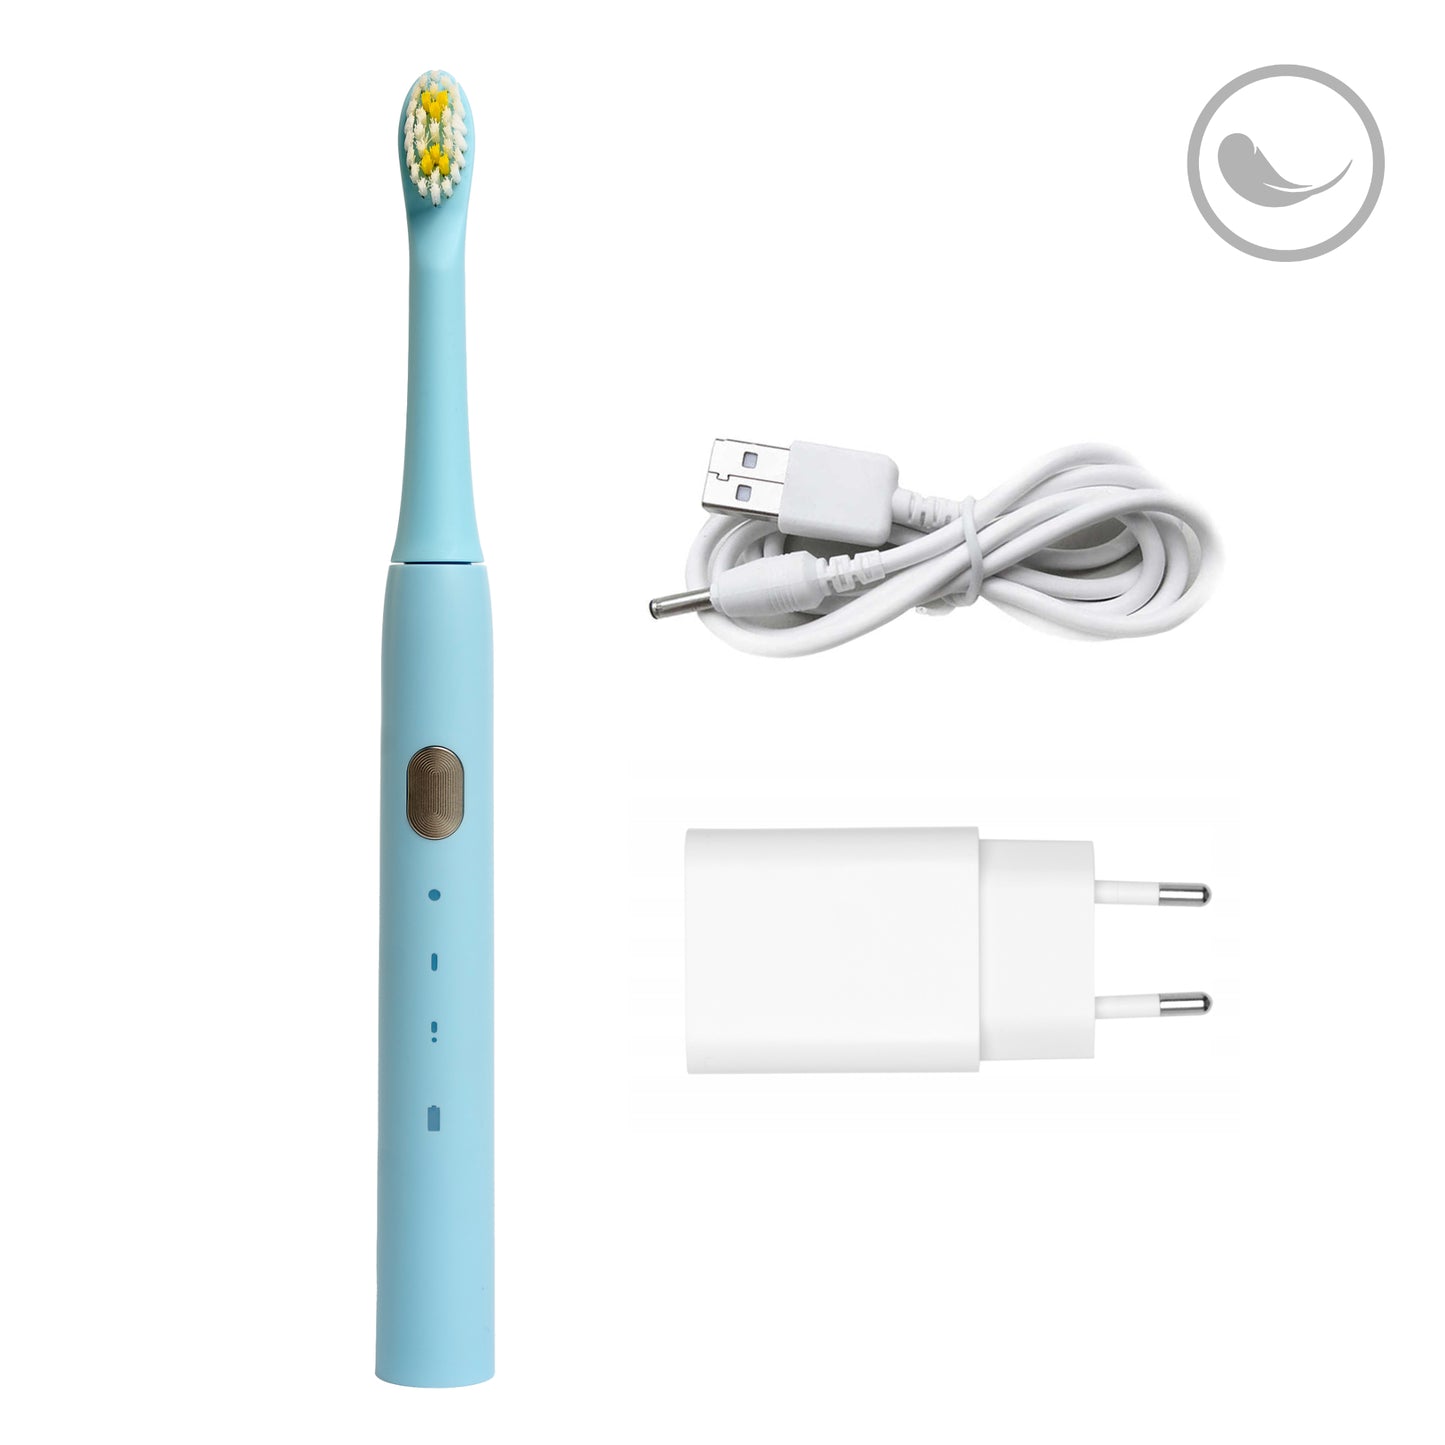 Электрическая зубная щетка Smiley Light Blue синяя купить электро зубную щетку купить электрическую зубную щетку купить зубную щетку электрическую купить електричну зубну щітку купити зубну щітку електричну